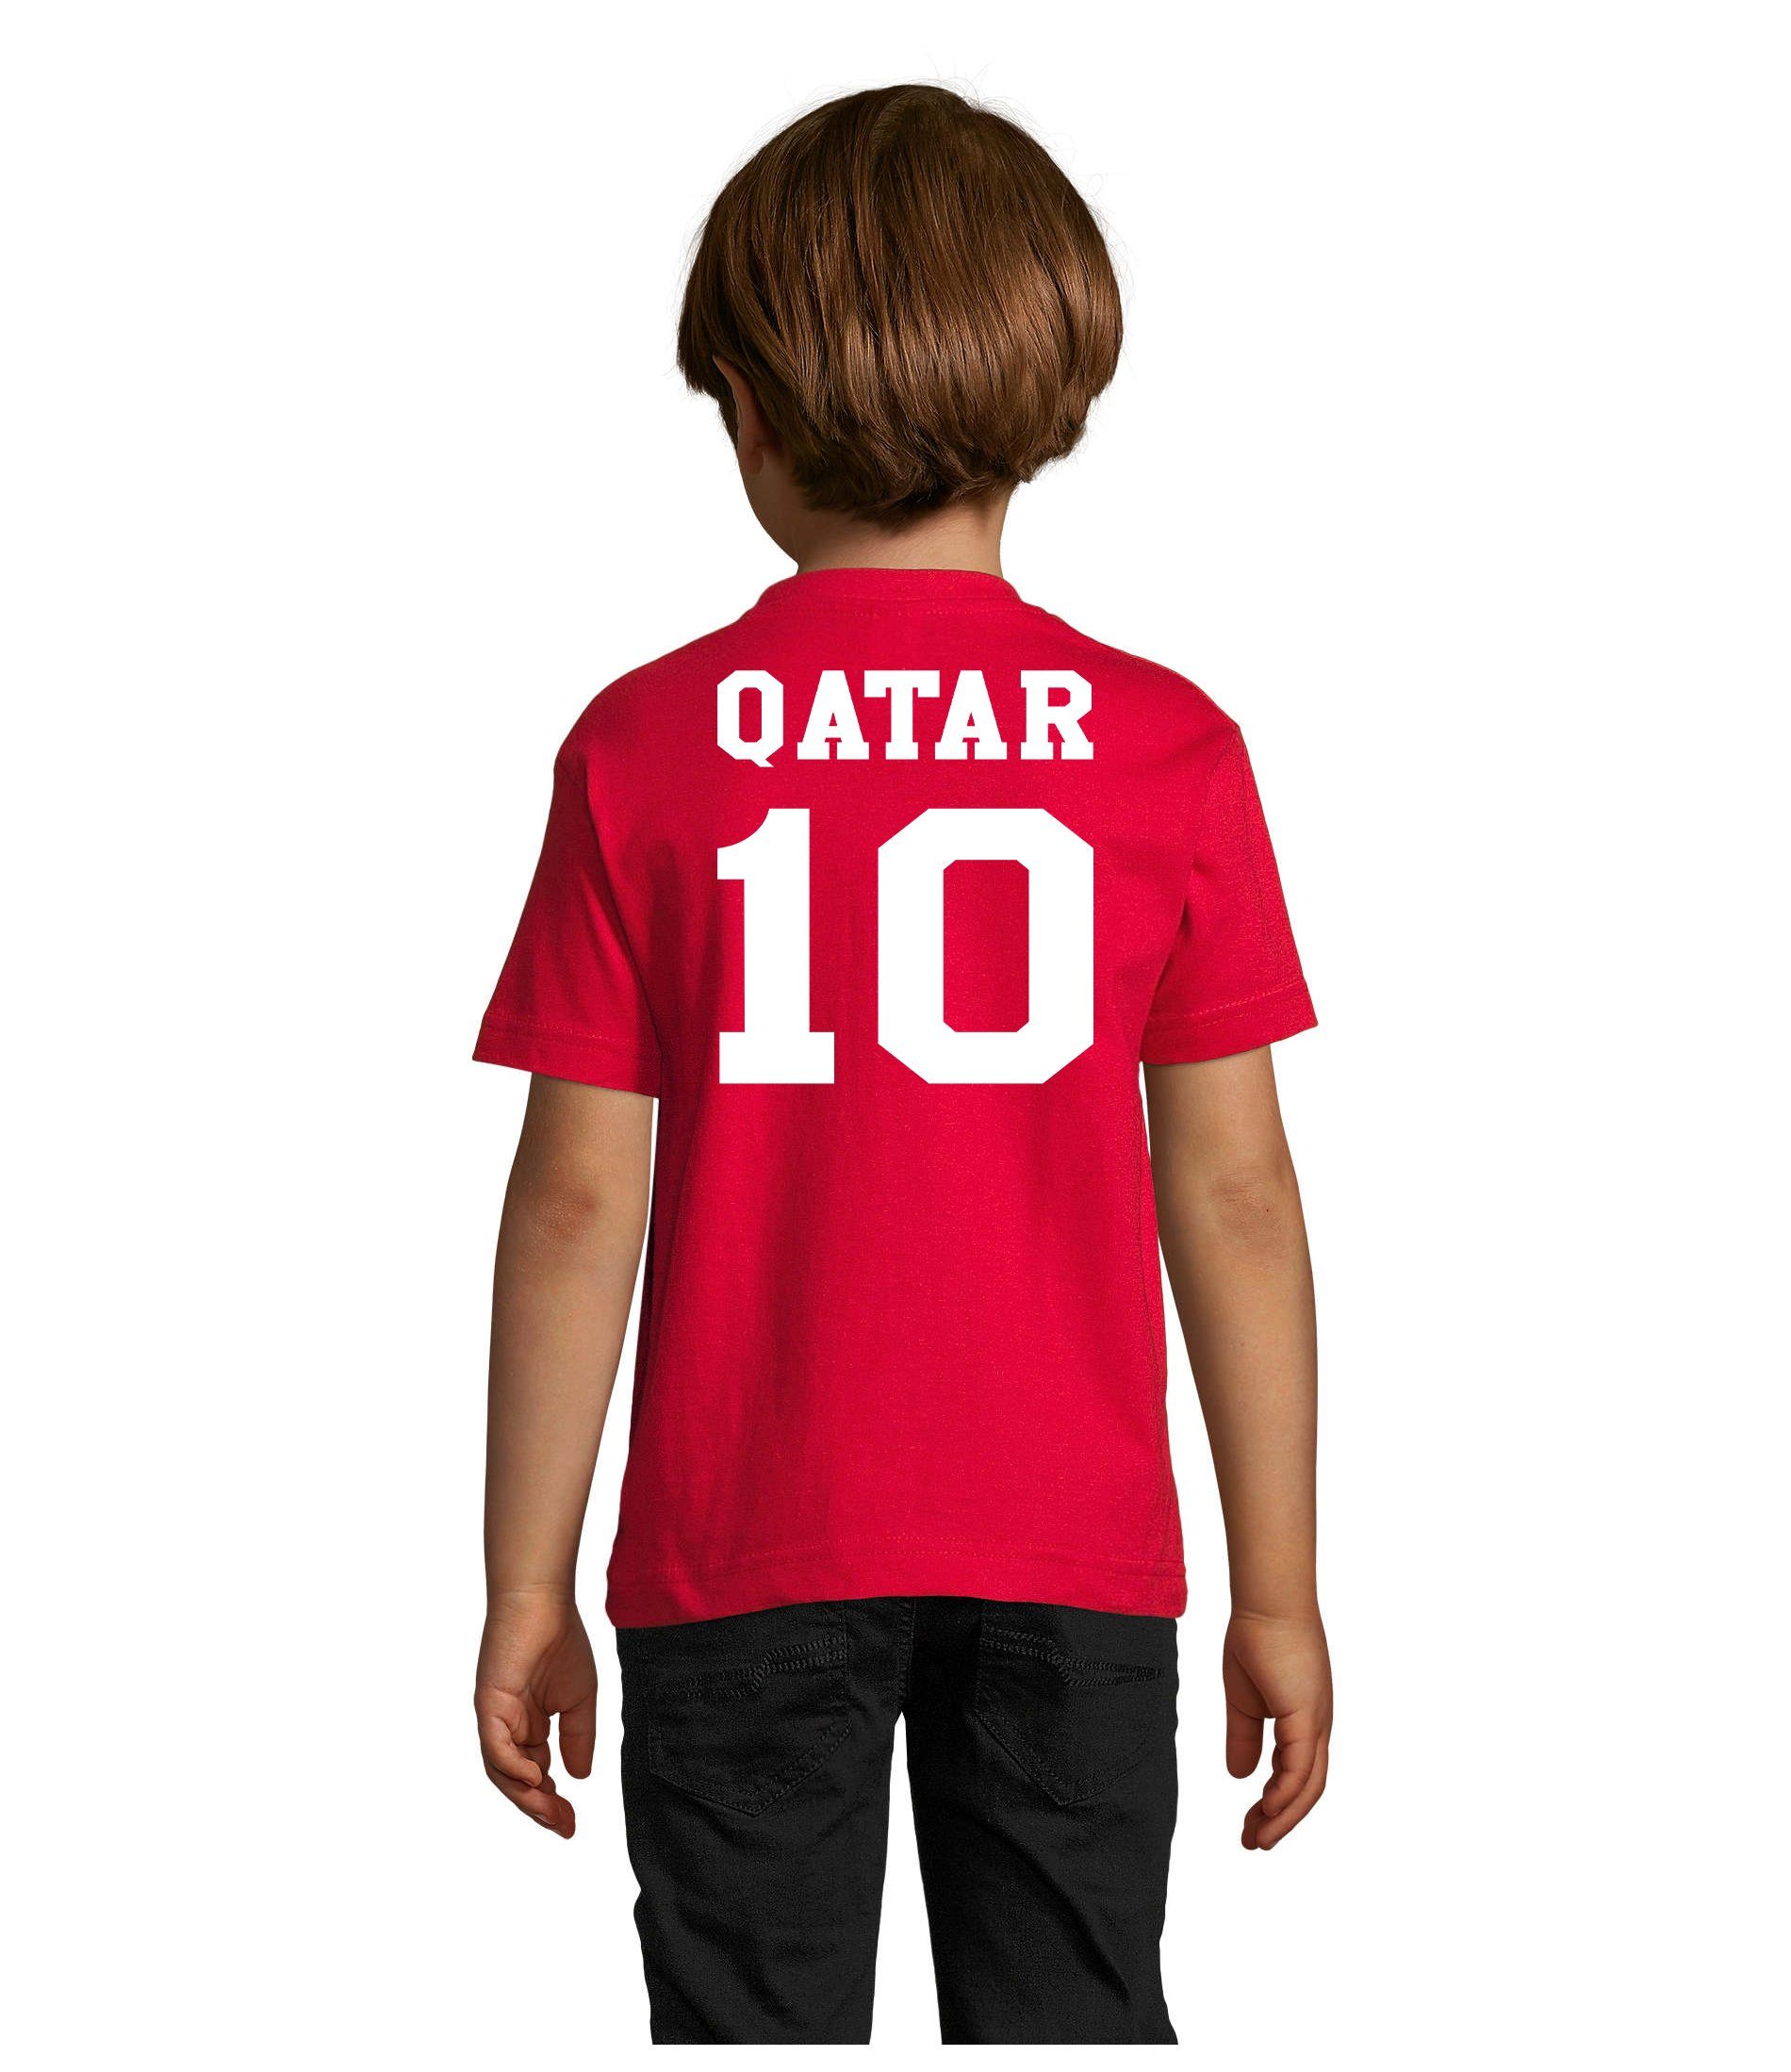 Trikot Fußball Qatar Katar Blondie Kinder & Weltmeister WM Brownie Sport T-Shirt